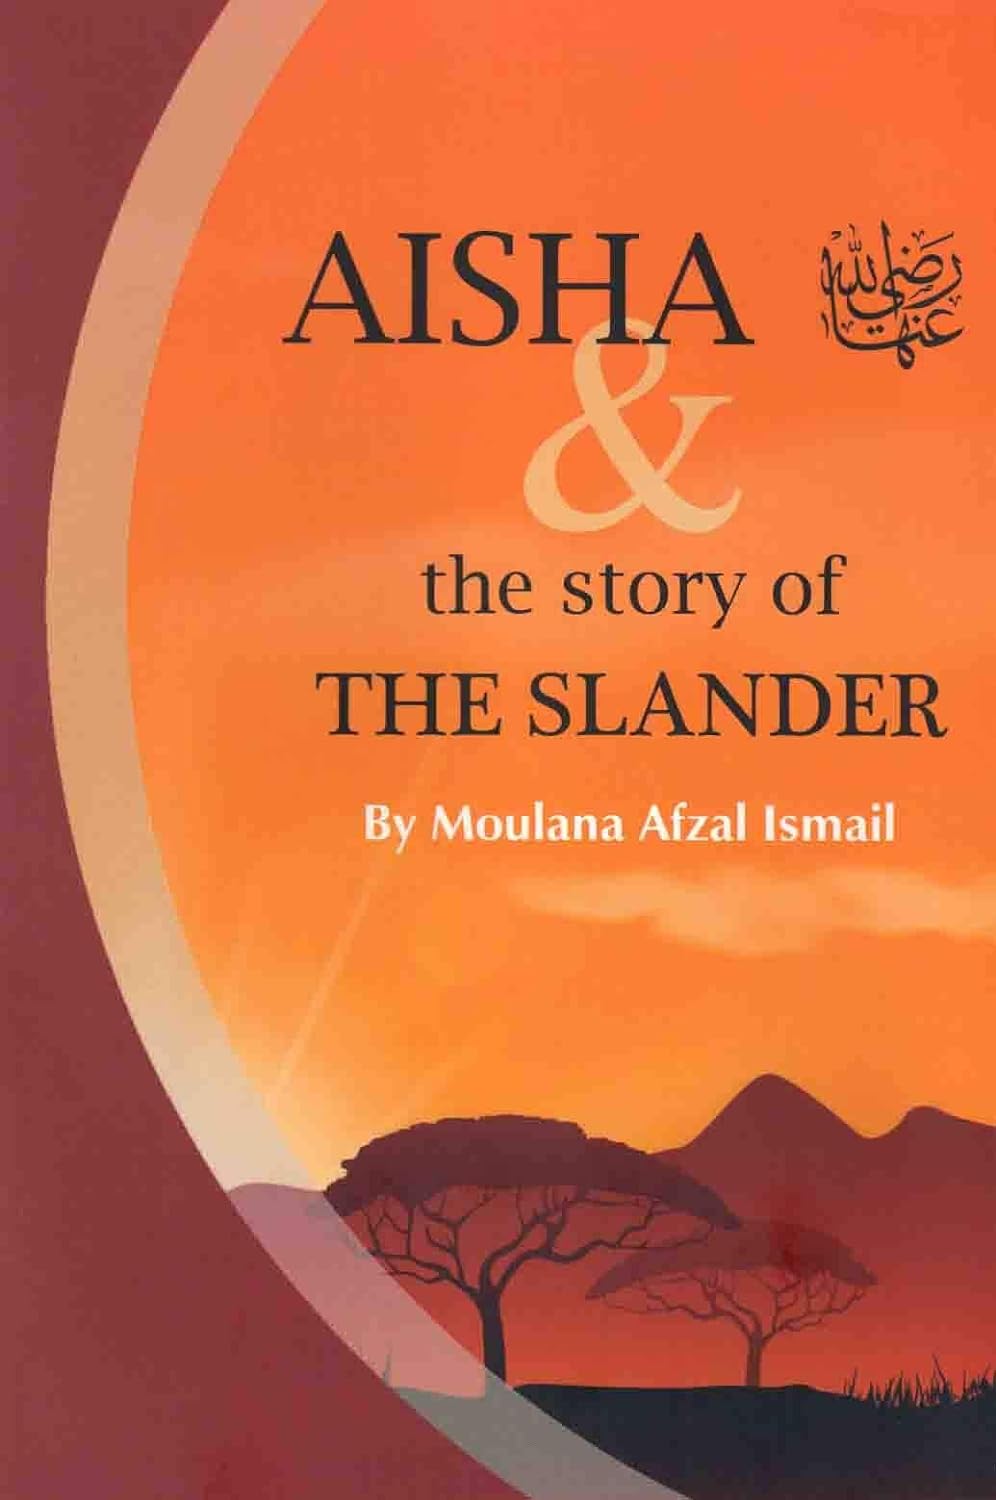 Aisha & The Story The Slander